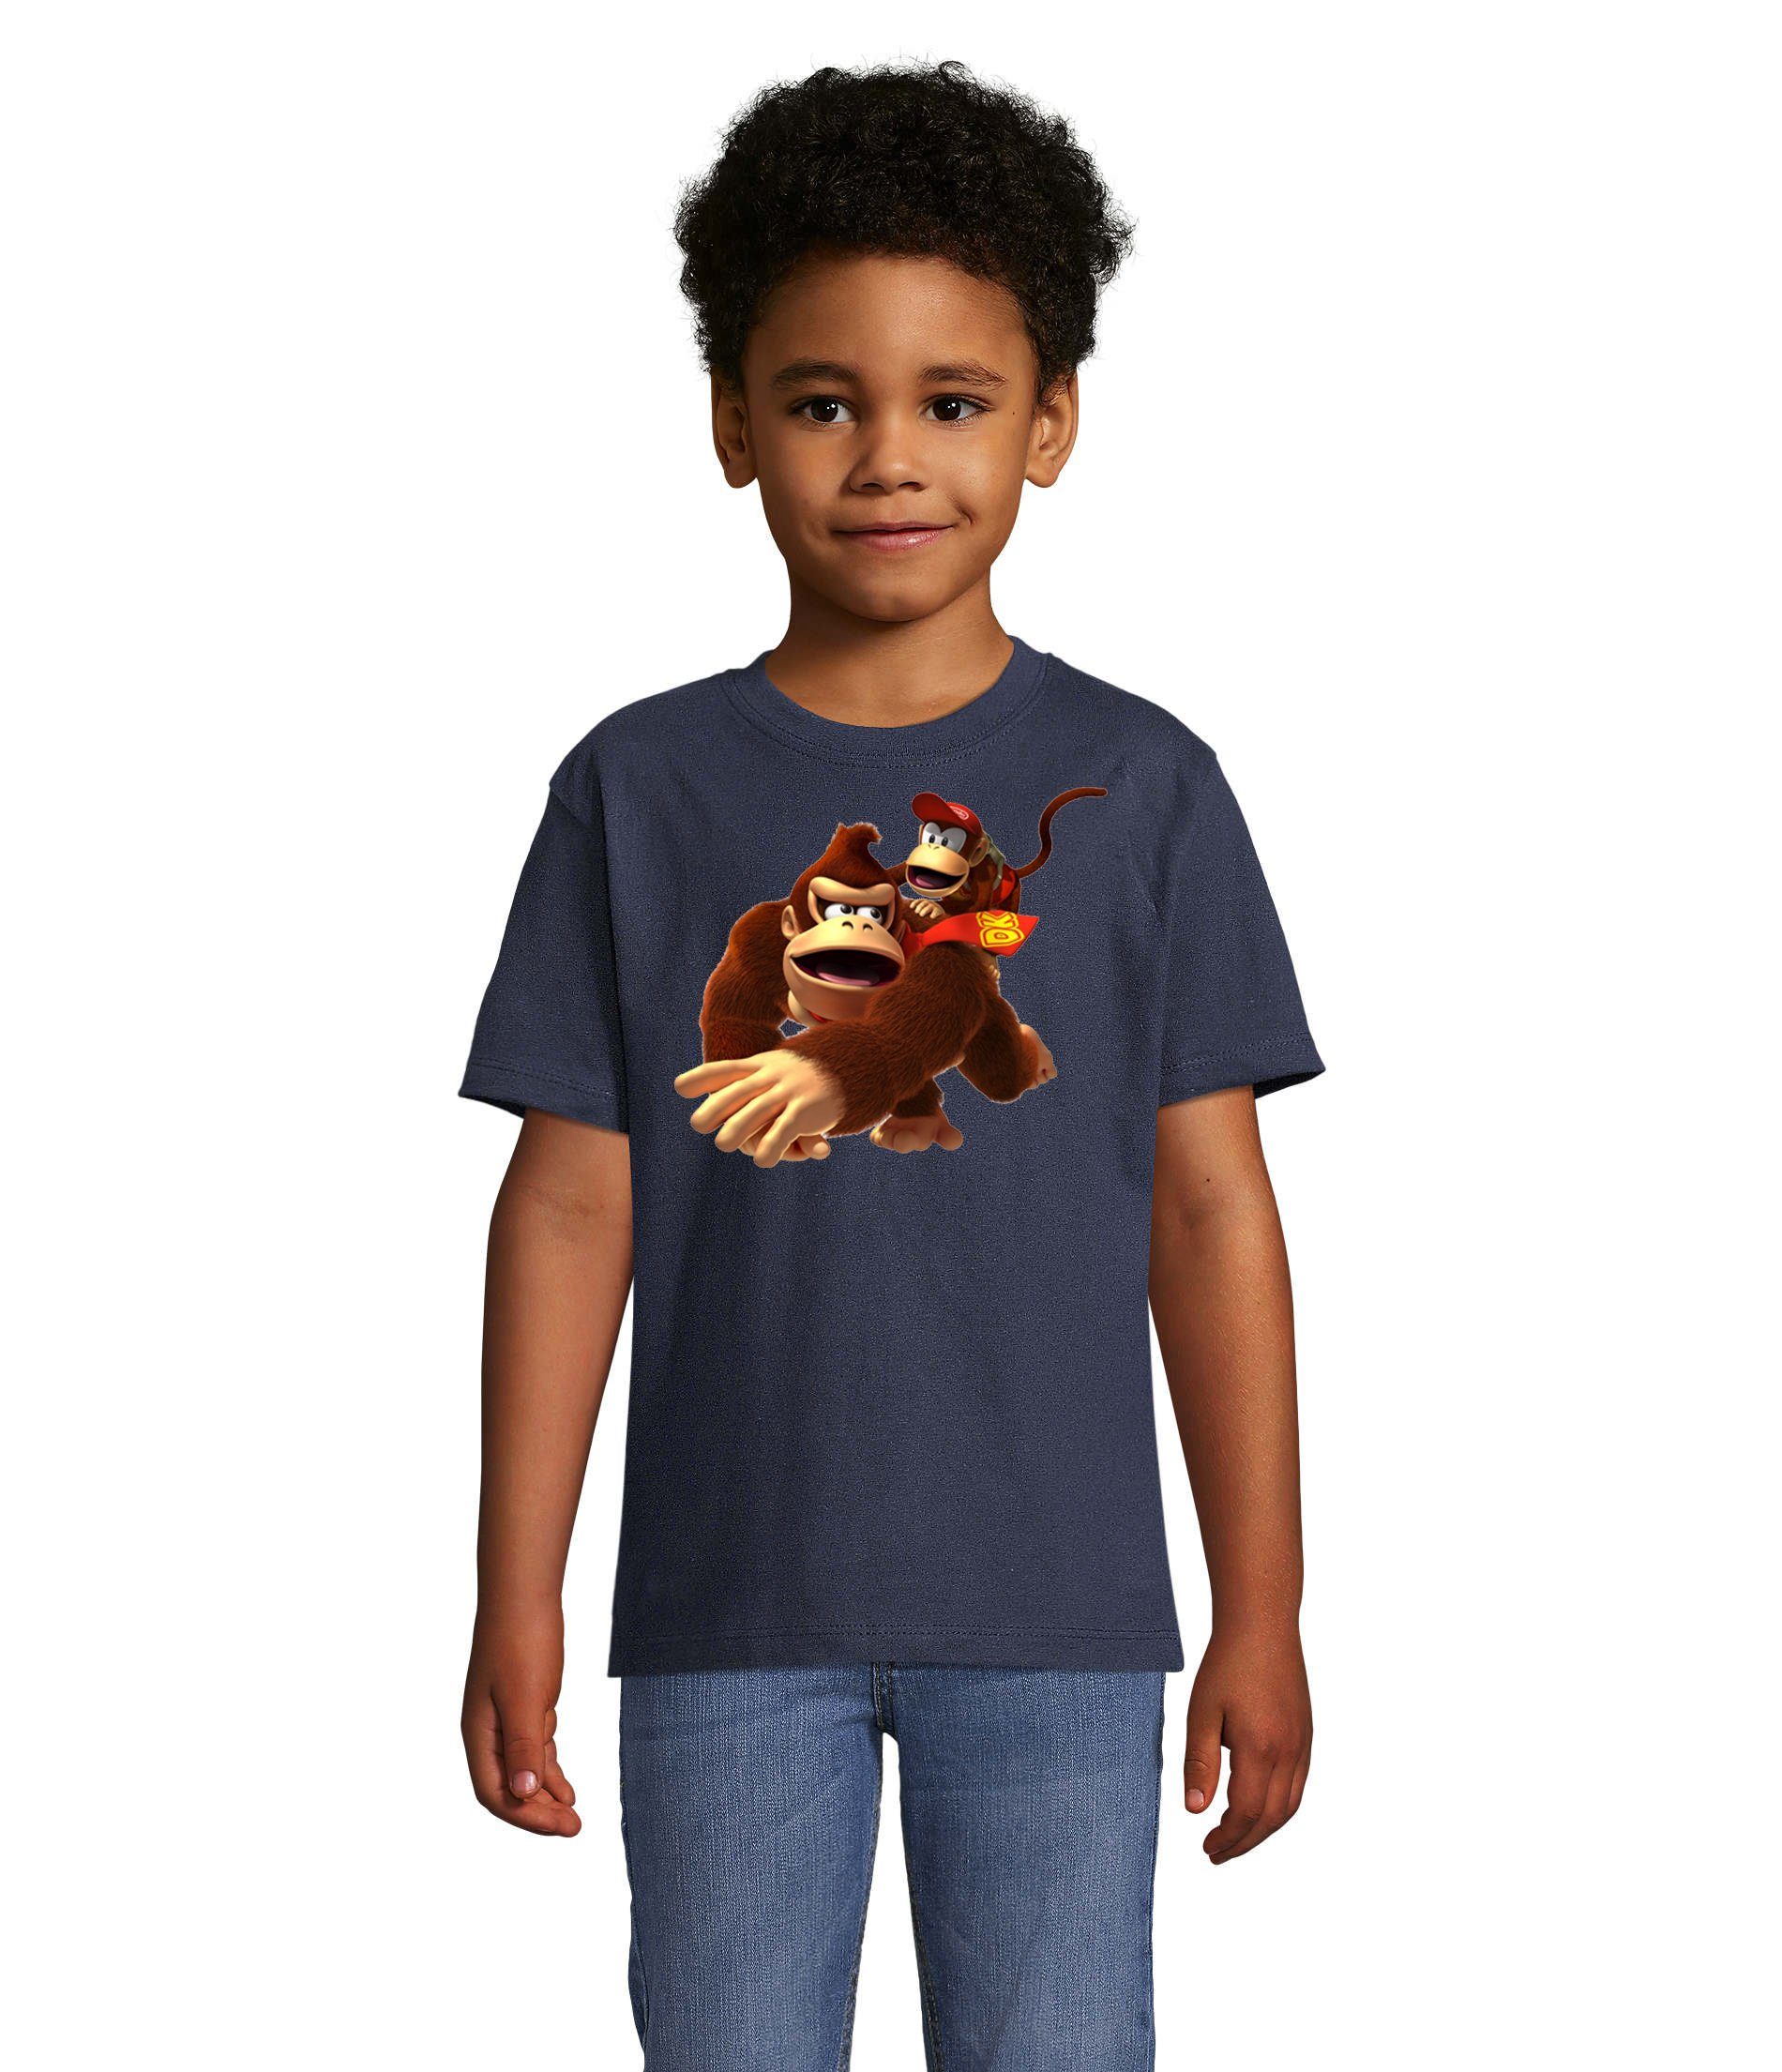 Blondie & Brownie T-Shirt »Kinder Jungen & Mädchen Donkey und Diddy Kong  Spiele Konsole Nerd Nintendo Logo Print« online kaufen | OTTO